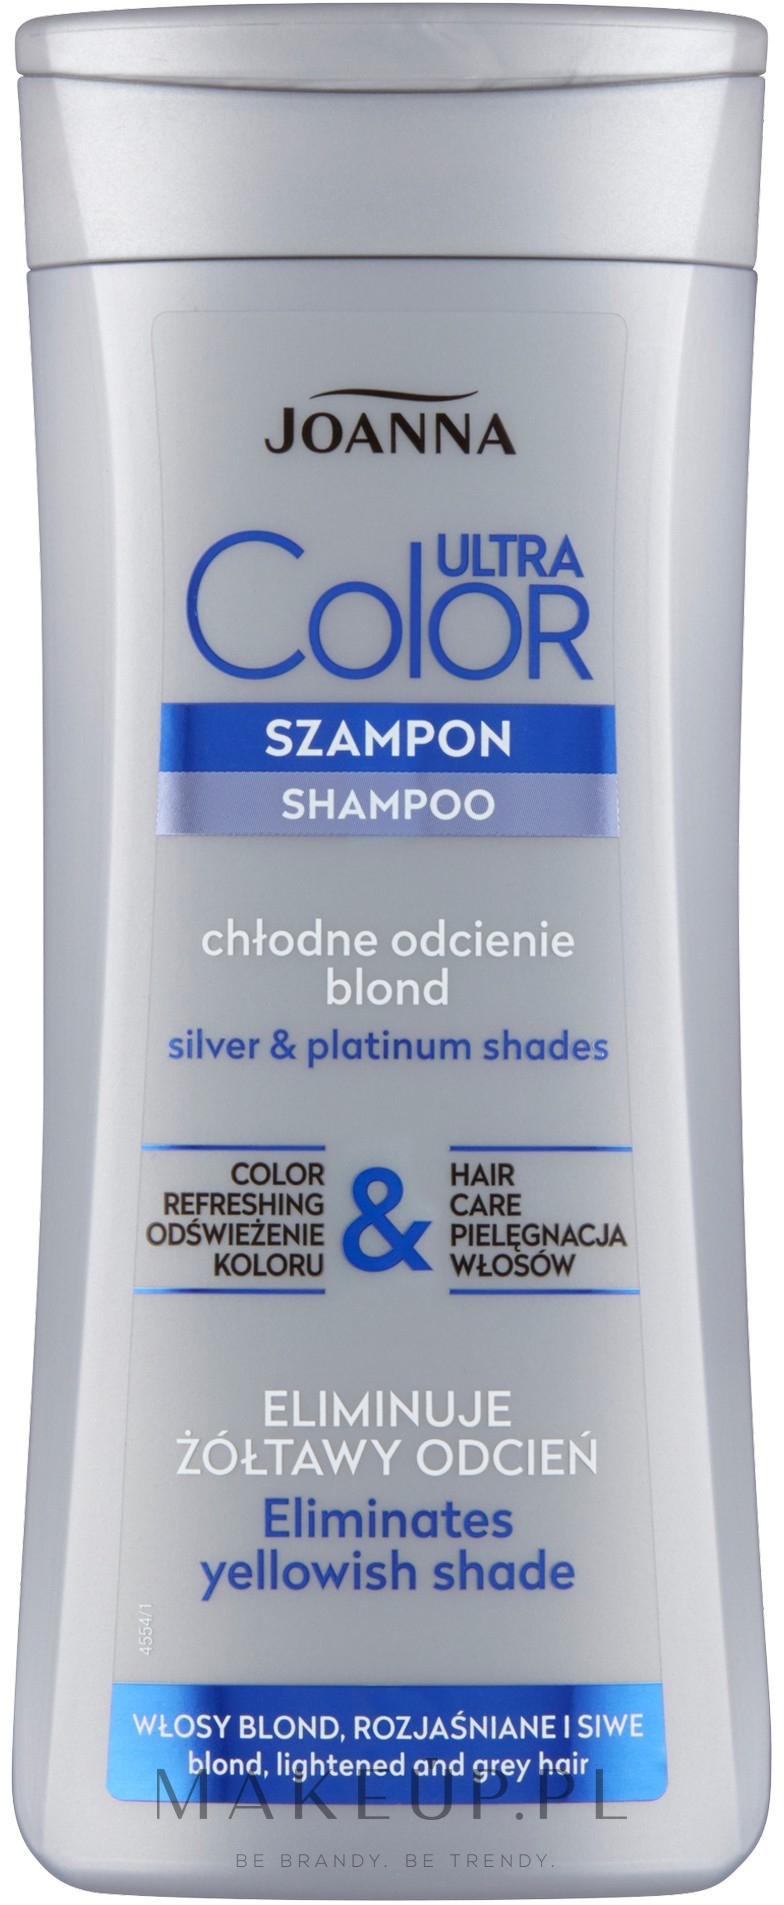 szampon joanna do siwych włosów dla mężczyzn